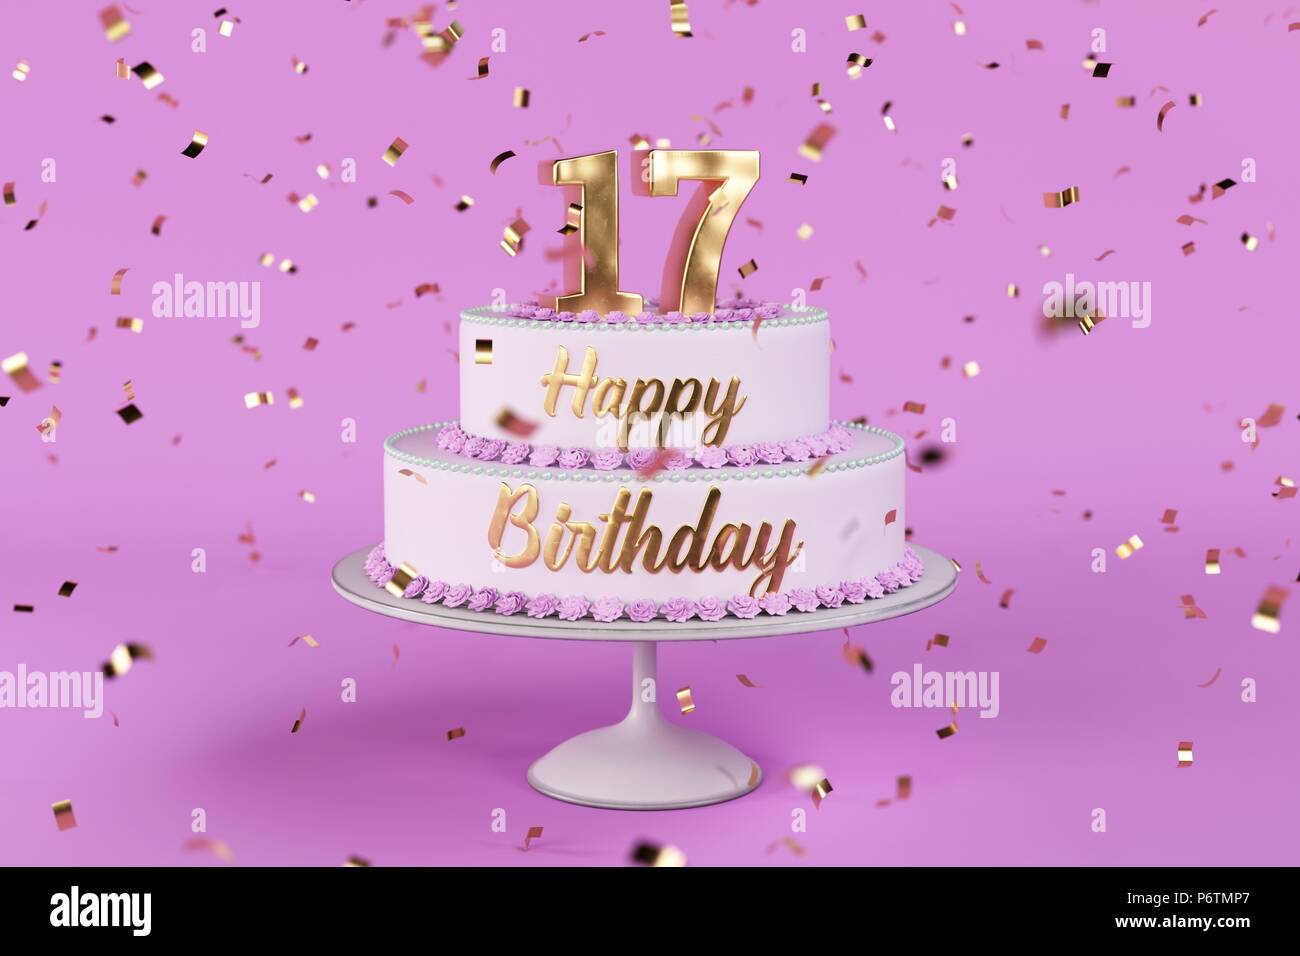 Geburtstag Kuchen Mit Goldenen Buchstaben Und Nummer 17 Auf Der Oberseite Stockfotografie Alamy